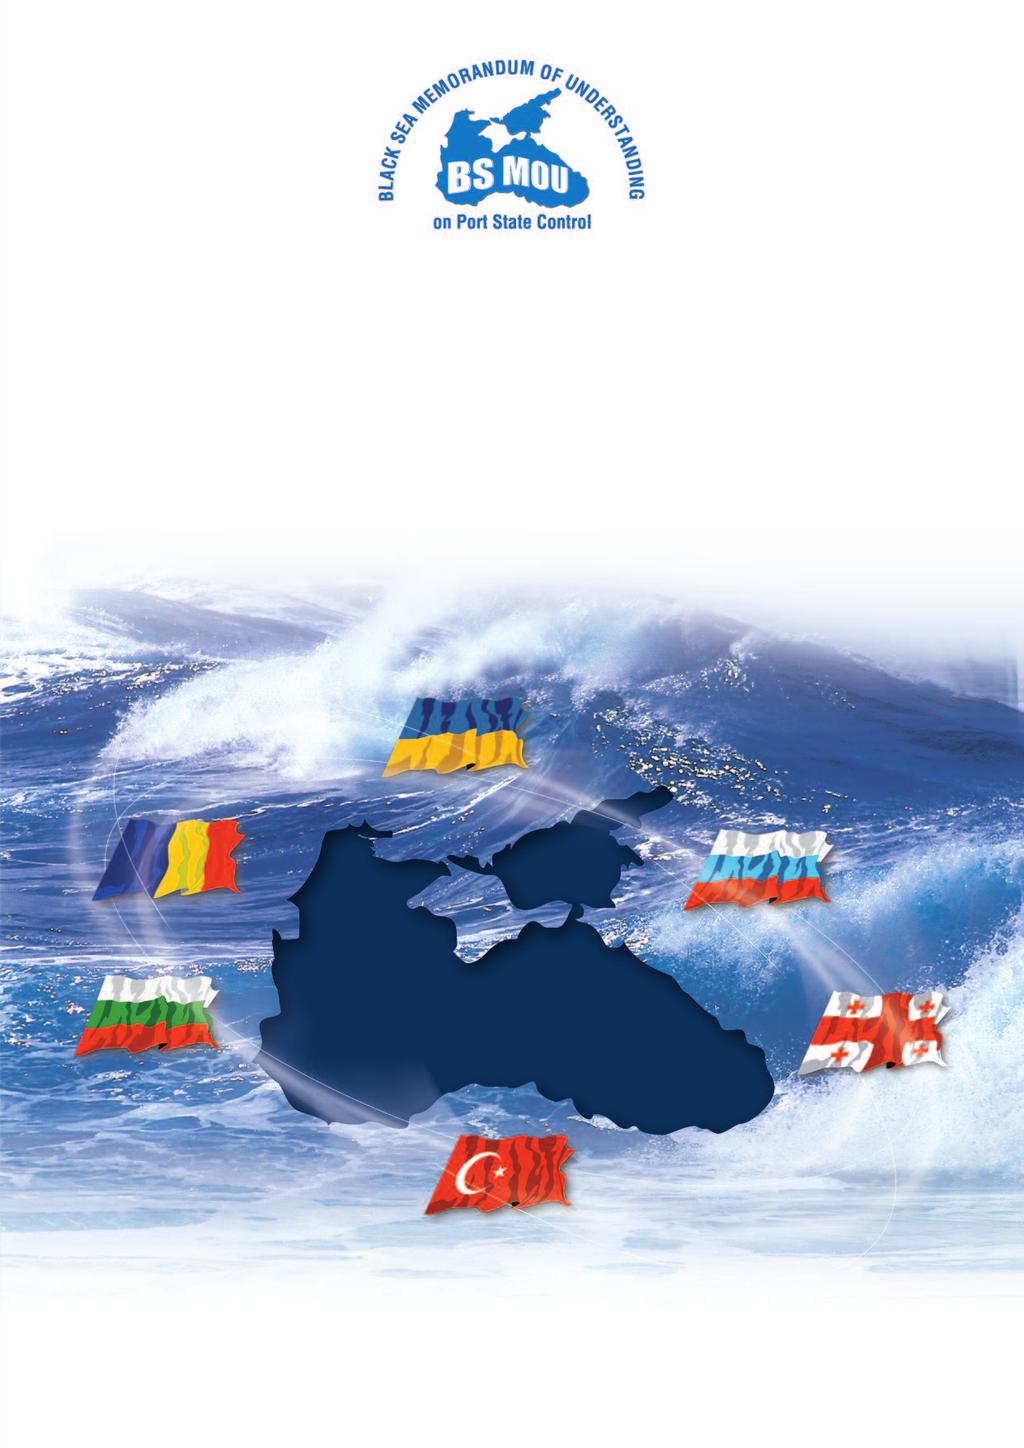 PORT STATE CONTROL IN THE BLACK SEA REGION Annual Report